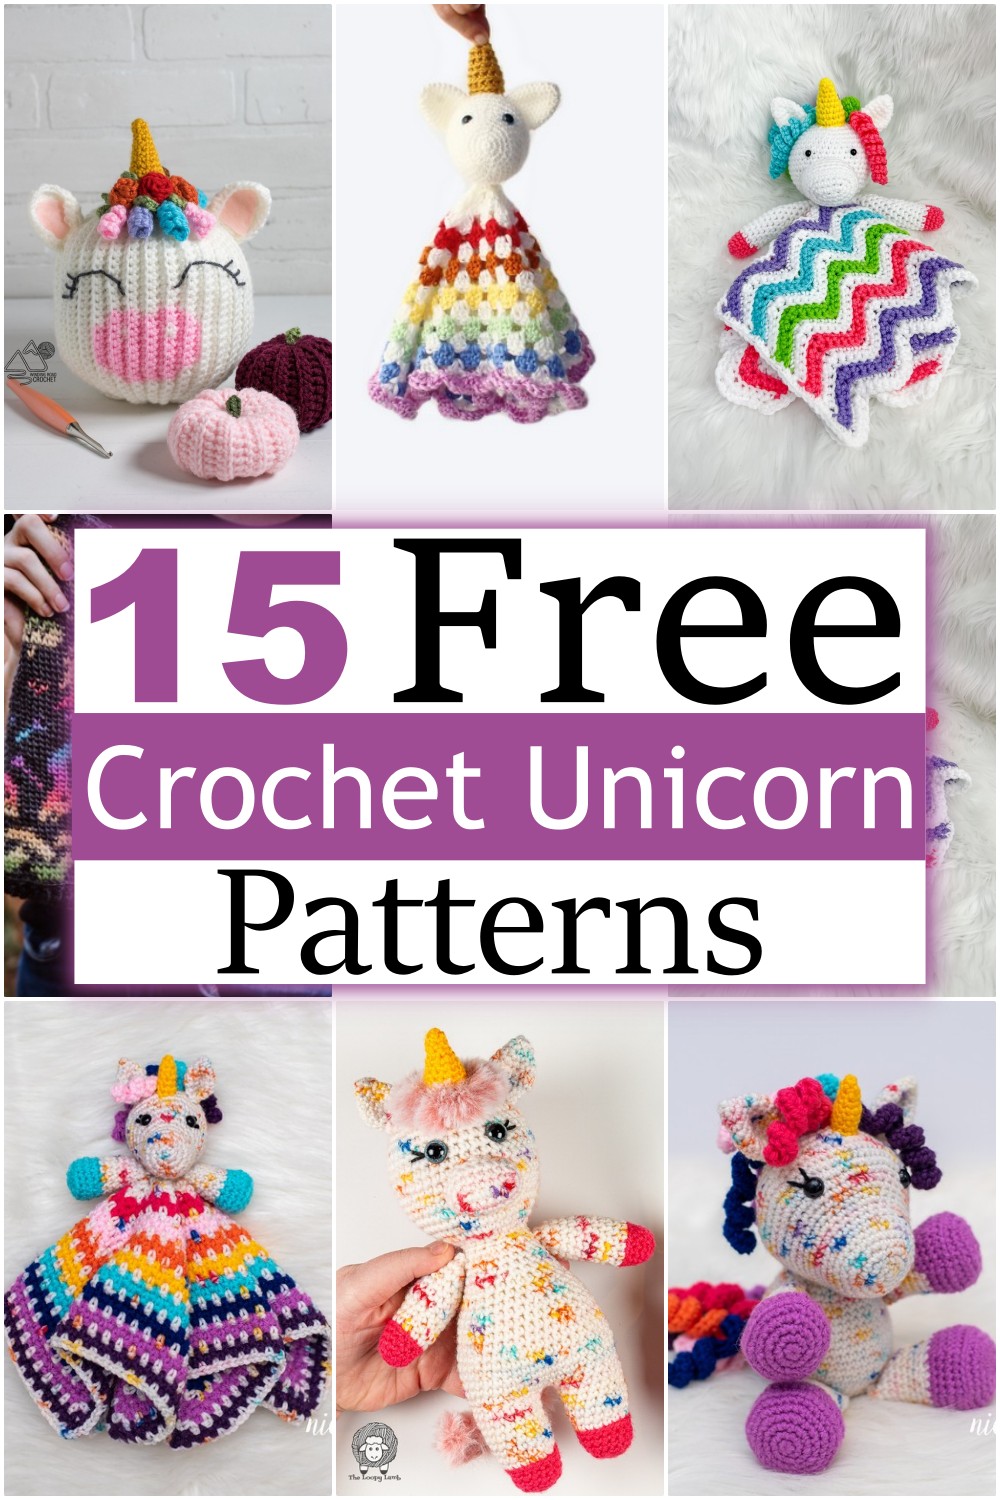  Free Crochet Unicorn Patterns